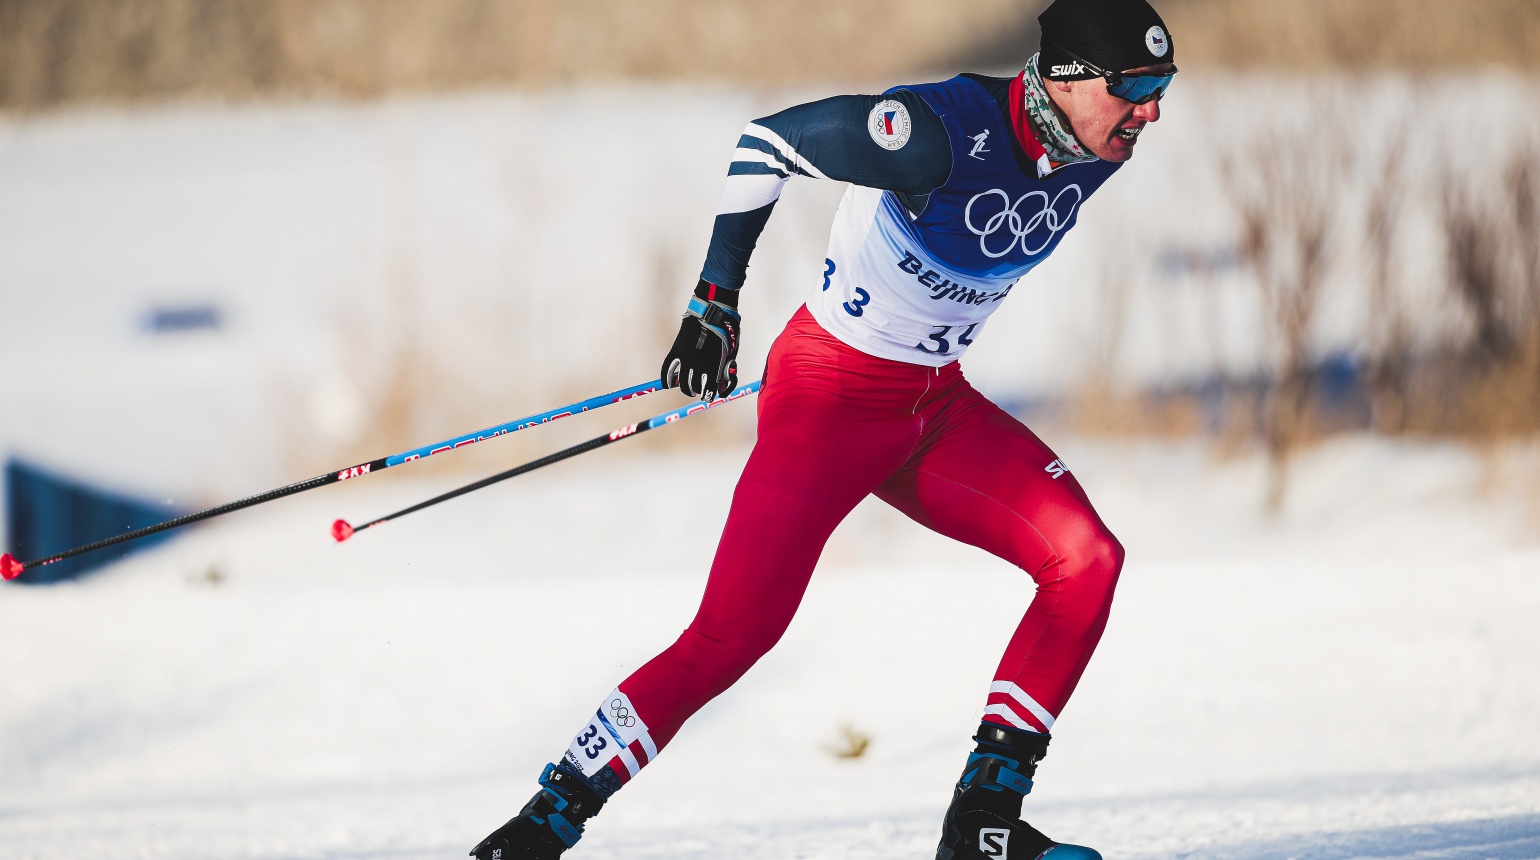 OH Peking 2022: Útok na desítku českým běžcům na lyžích nevyšel. Ve štafetě berou 12. místo